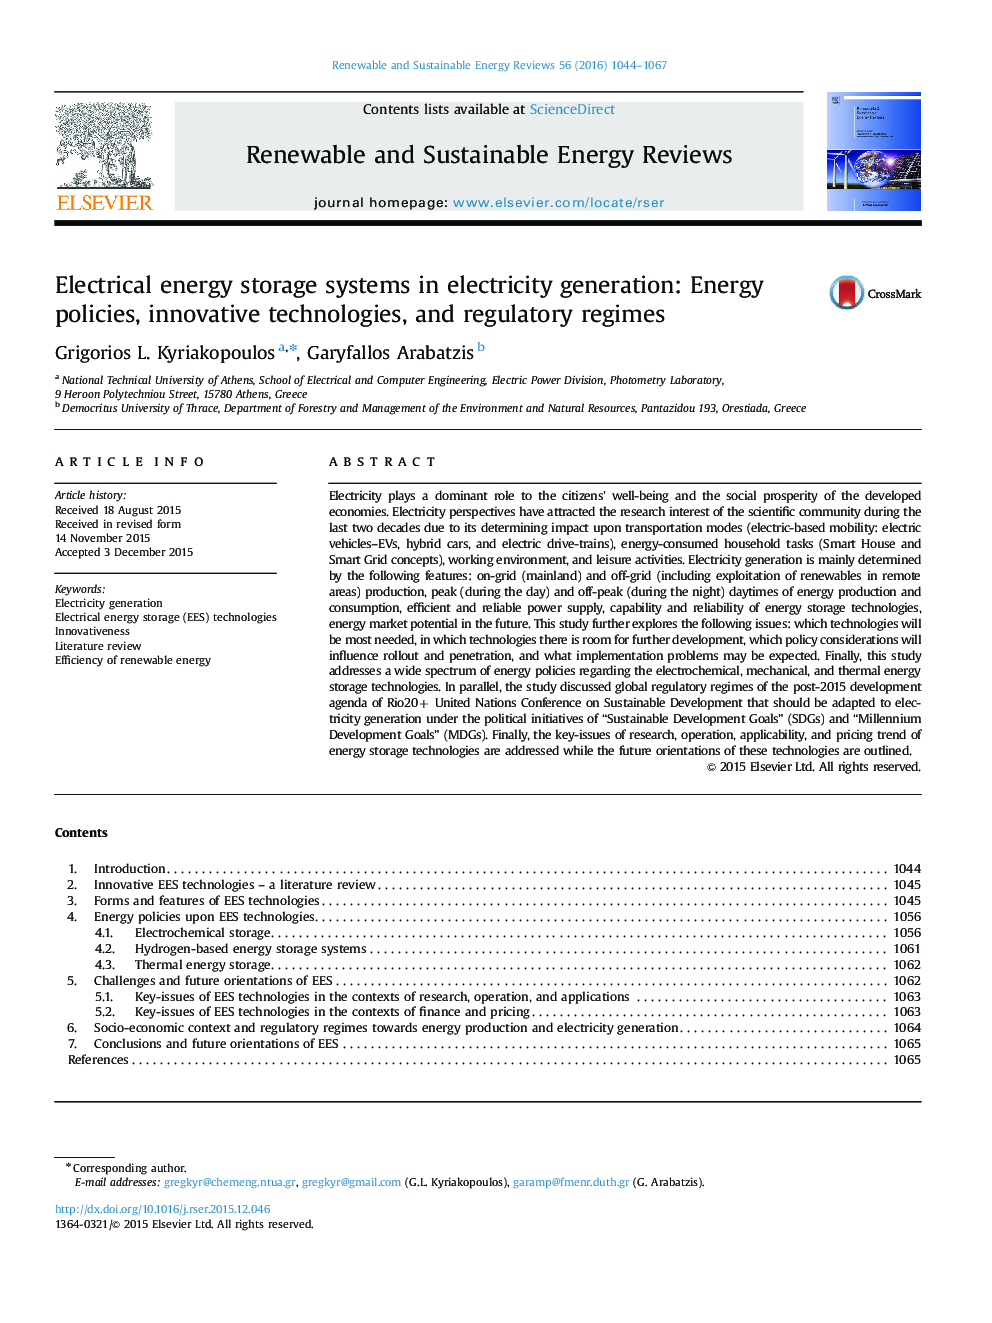 سیستم های ذخیره انرژی الکتریکی در تولید برق: سیاست های انرژی، فن آوری های نوین و رژیم های نظارتی 